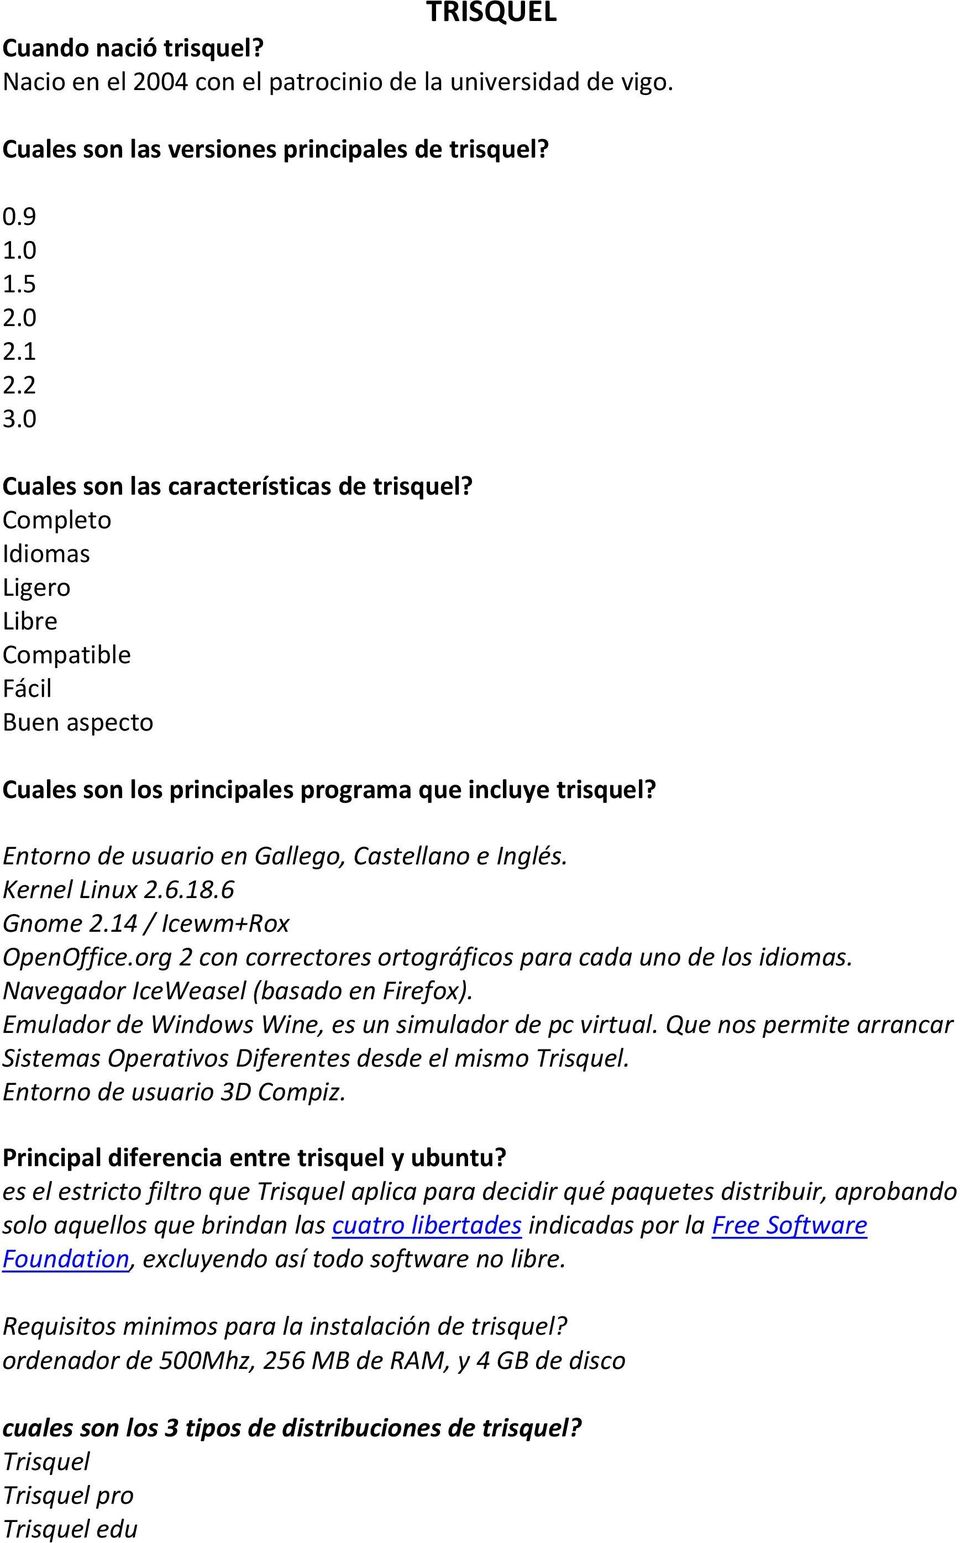 Entorno de usuario en Gallego, Castellano e Inglés. Kernel Linux 2.6.18.6 Gnome 2.14 / Icewm+Rox OpenOffice.org 2 con correctores ortográficos para cada uno de los idiomas.